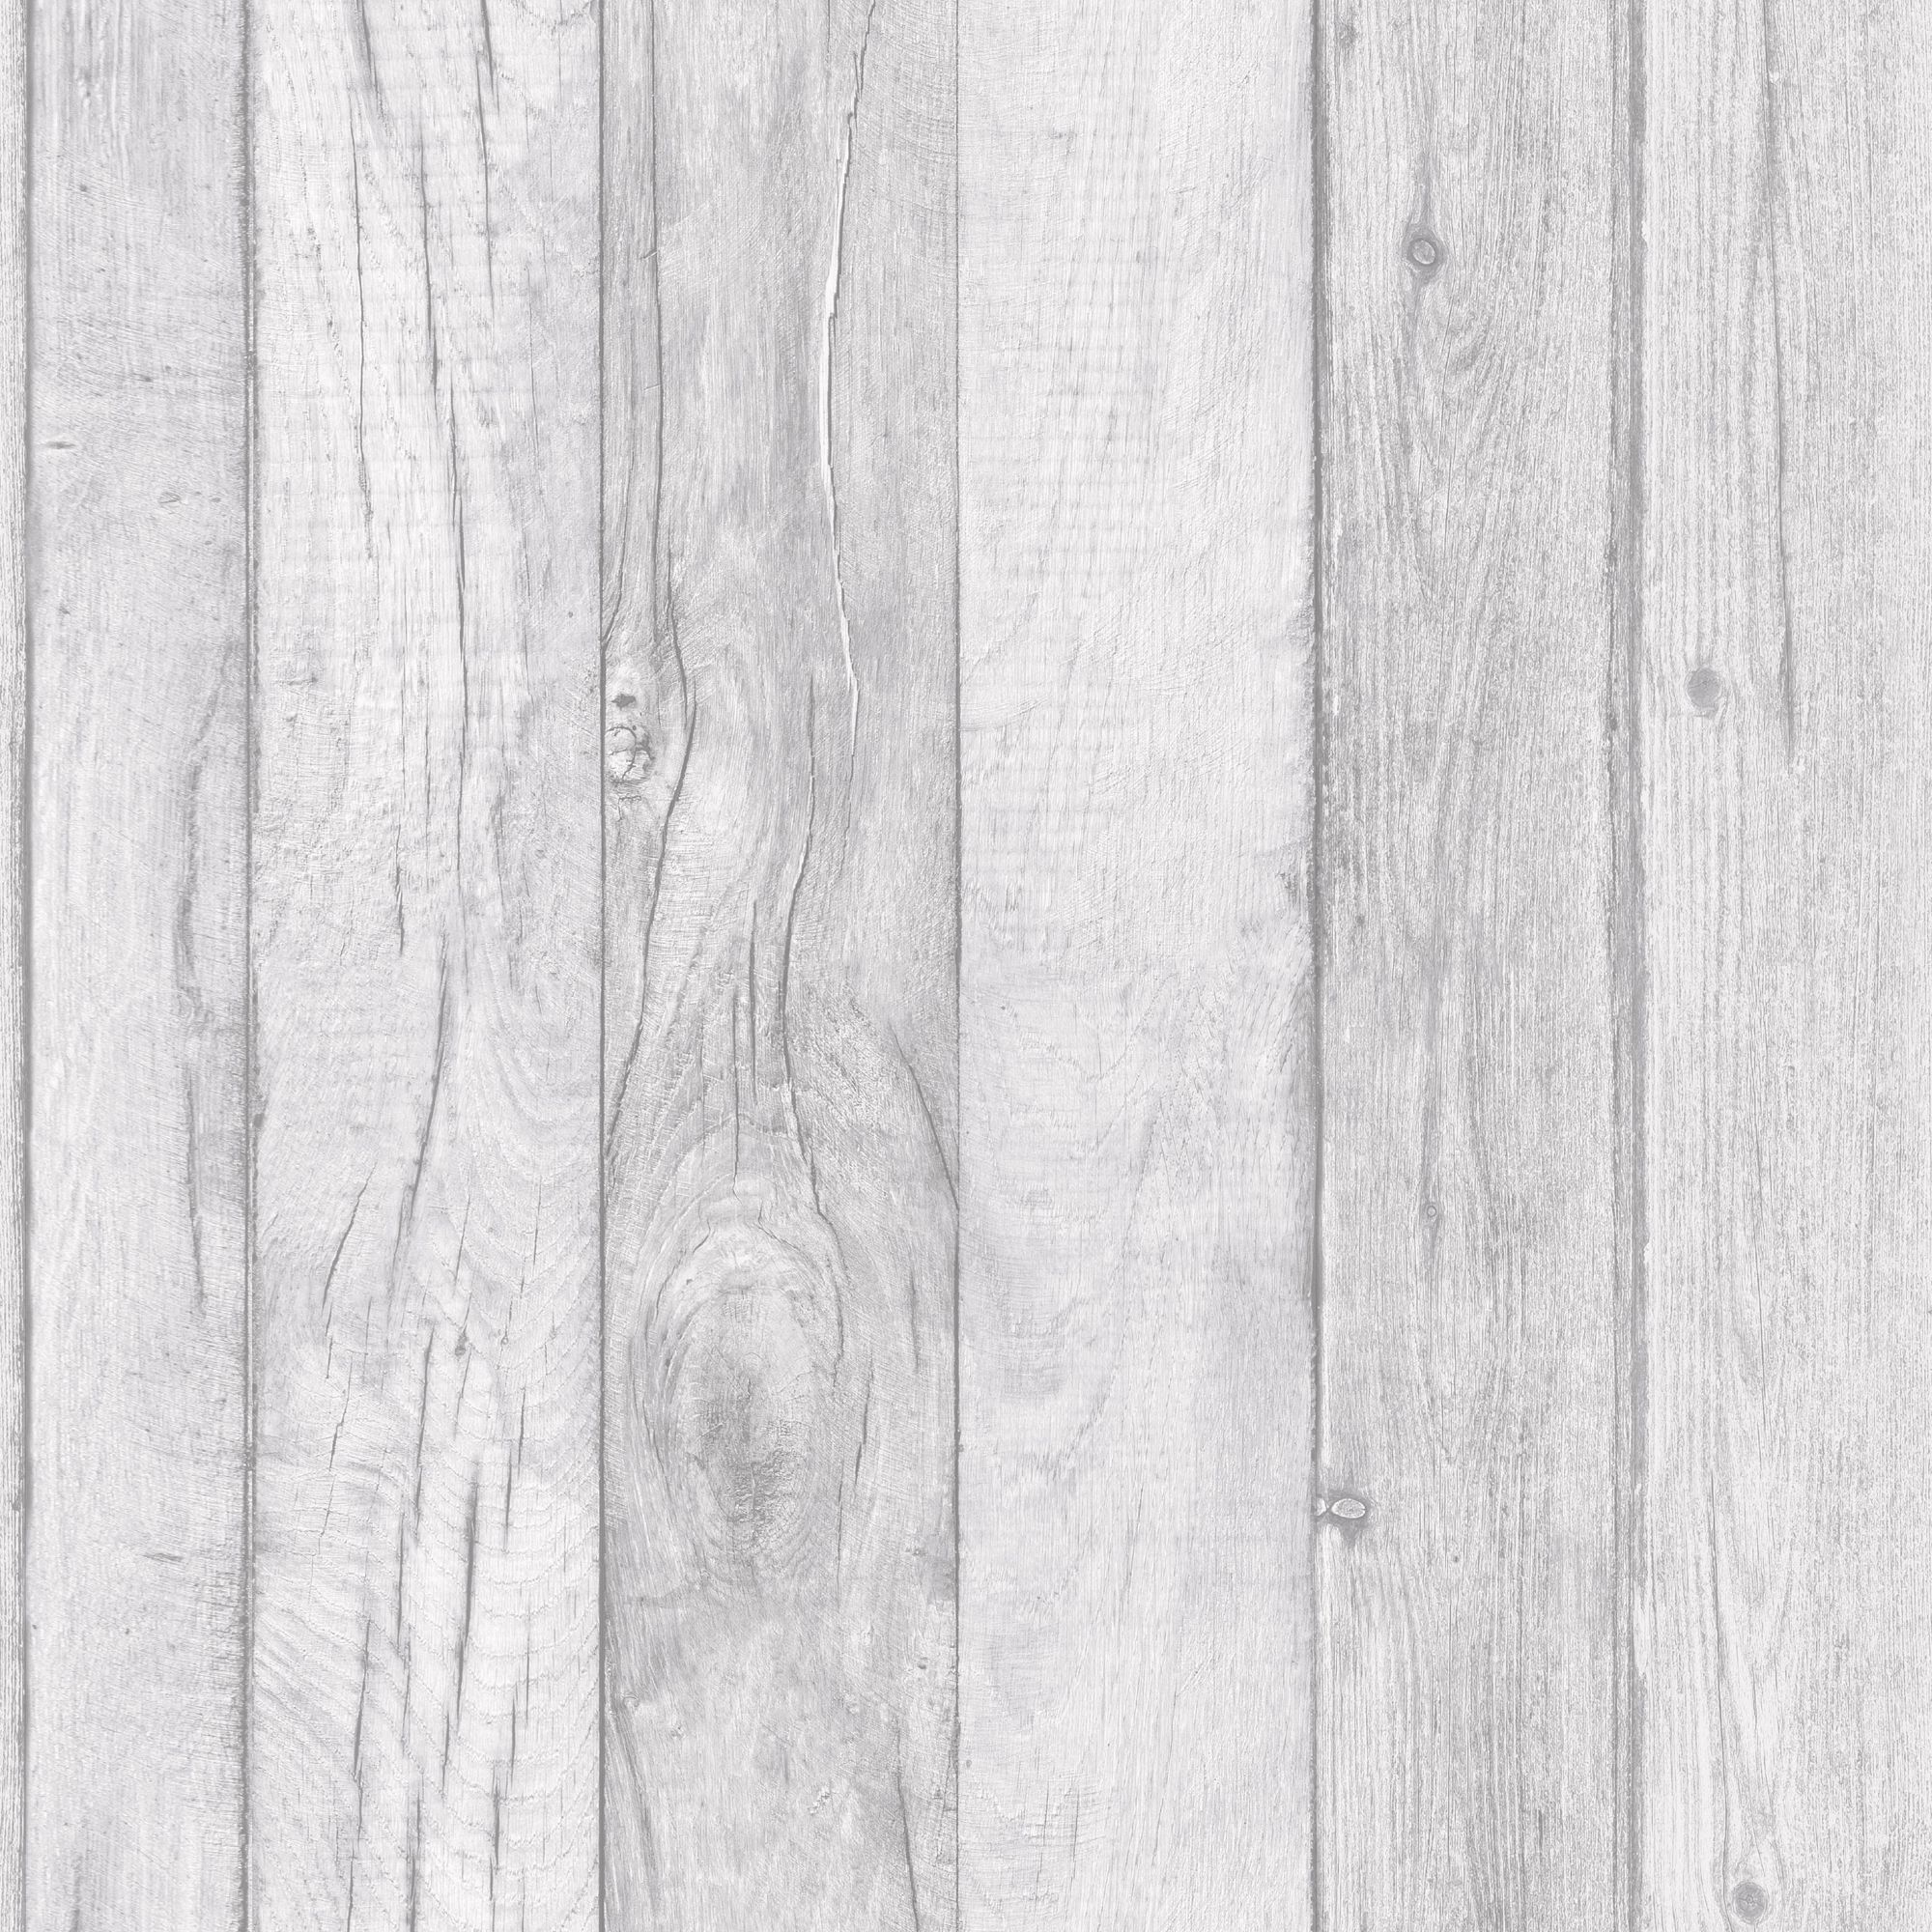 دانلود تکسچر چوب سفید با بافت ساده و زیبا اچ دی 